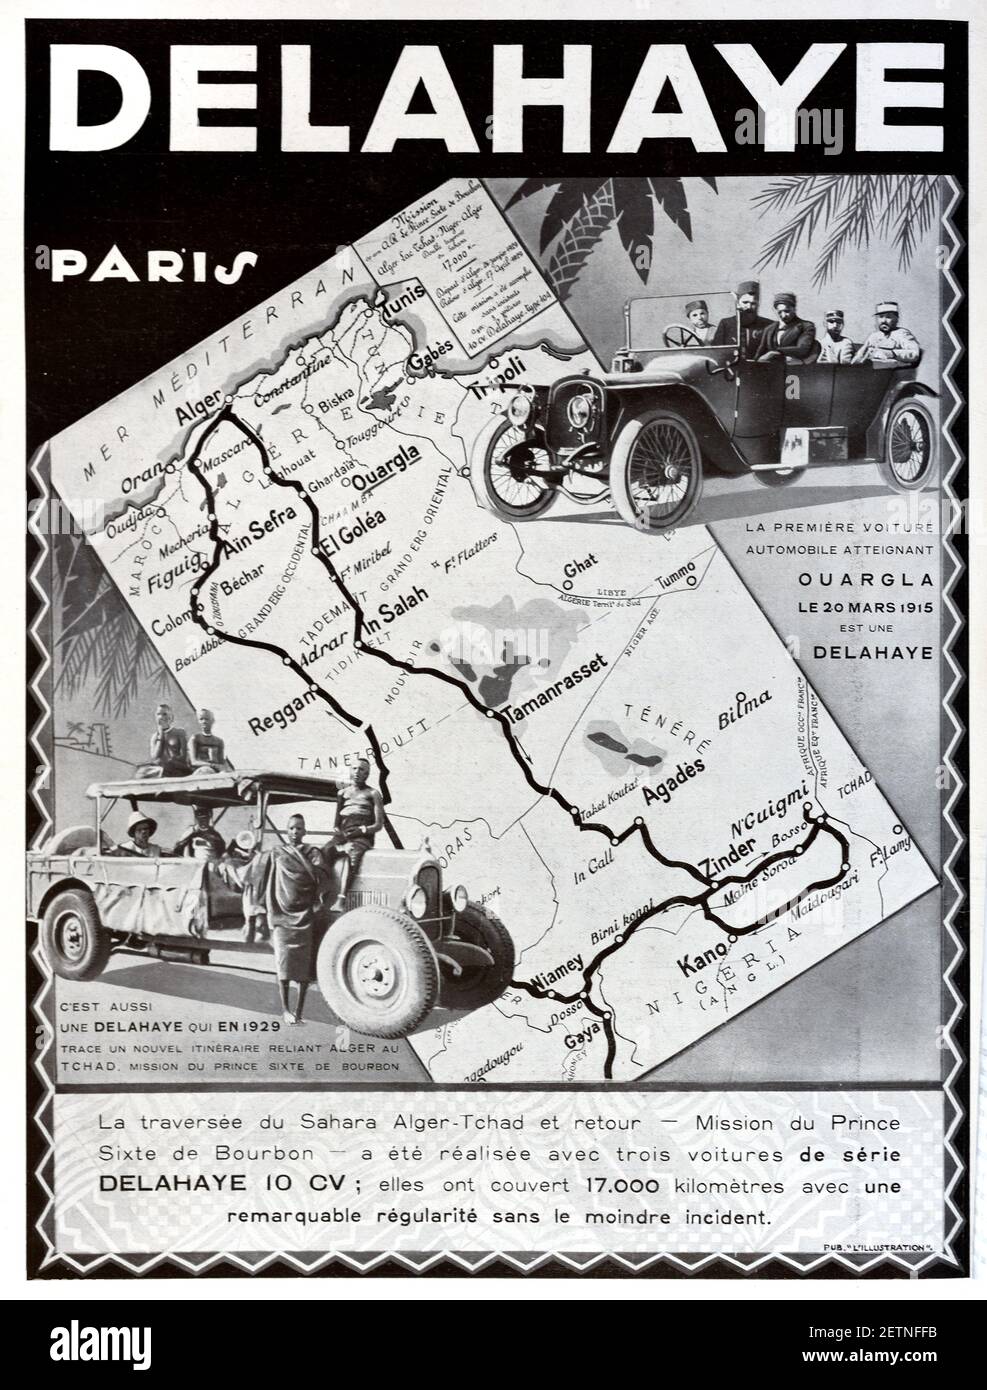 Publicité, publicité ou publicité vintage pour Delahaye Cars 1931. L'illustration est mise sur un fond de la route d'un rassemblement d'Algers en Algérie, à travers le désert du Sahara jusqu'au Nigeria Banque D'Images